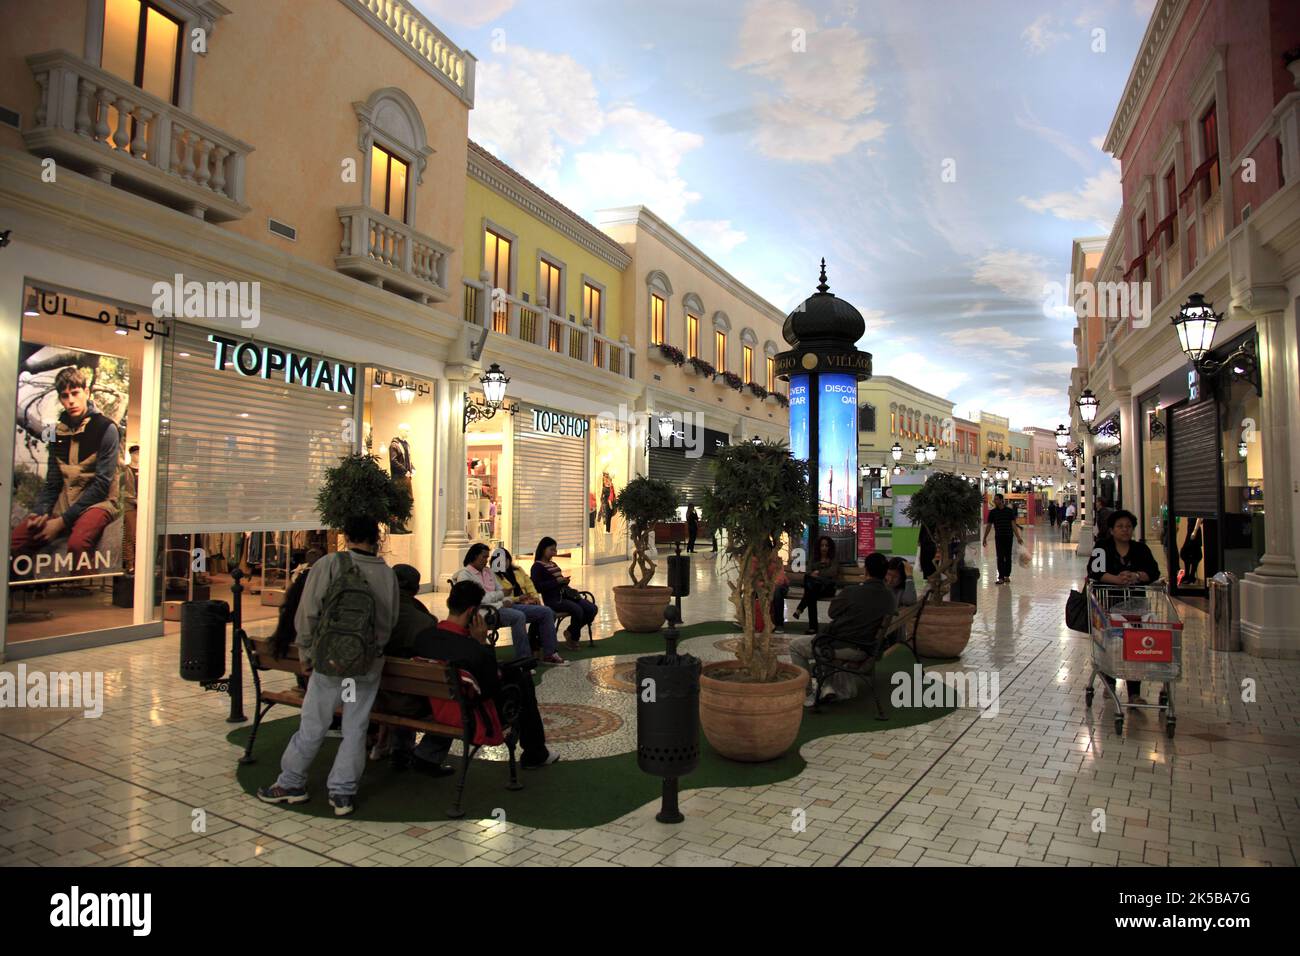 DAS Villaggio Einkaufscenter im Italienischen Stil, Al Aziziyah, Aspire, Doha, Qatar, Katar Banque D'Images